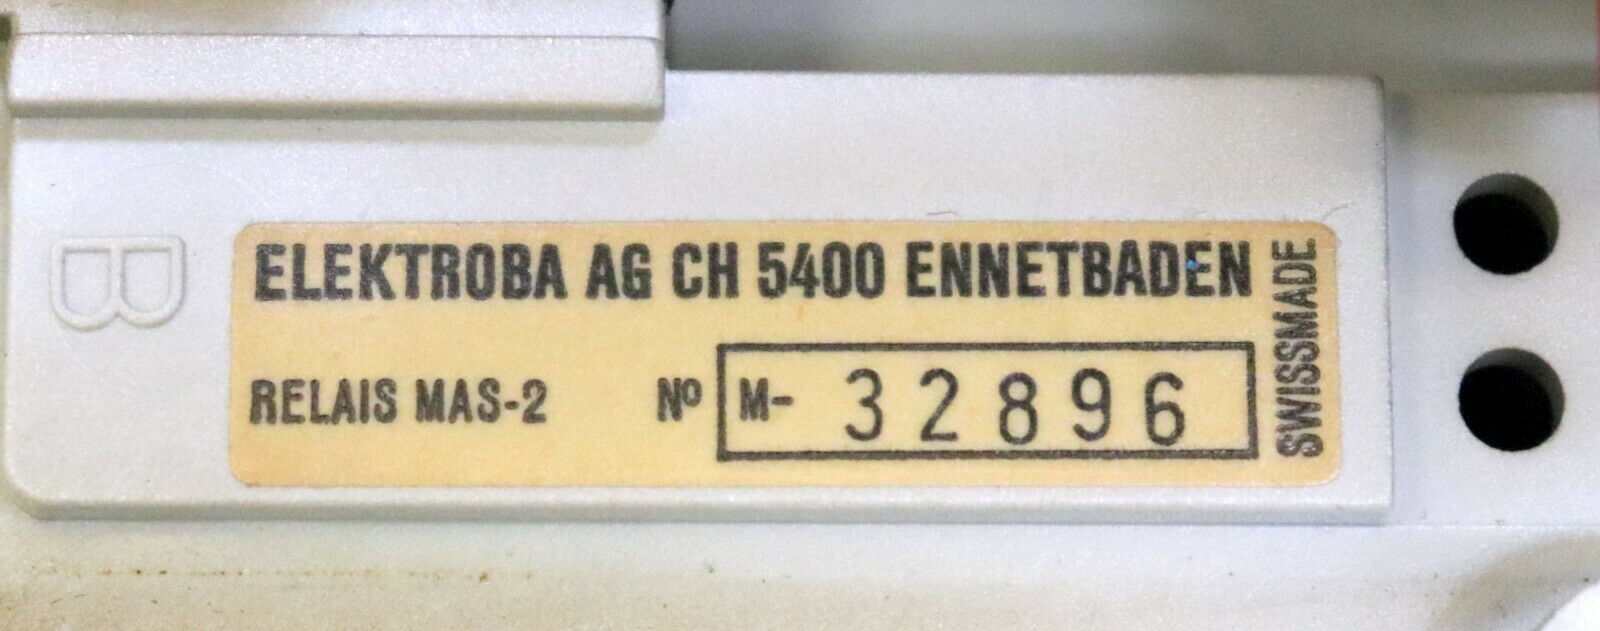 ELEKTROBA Minimalstrom-Relais MAS-2 No. M-32896 300-600A - gebraucht